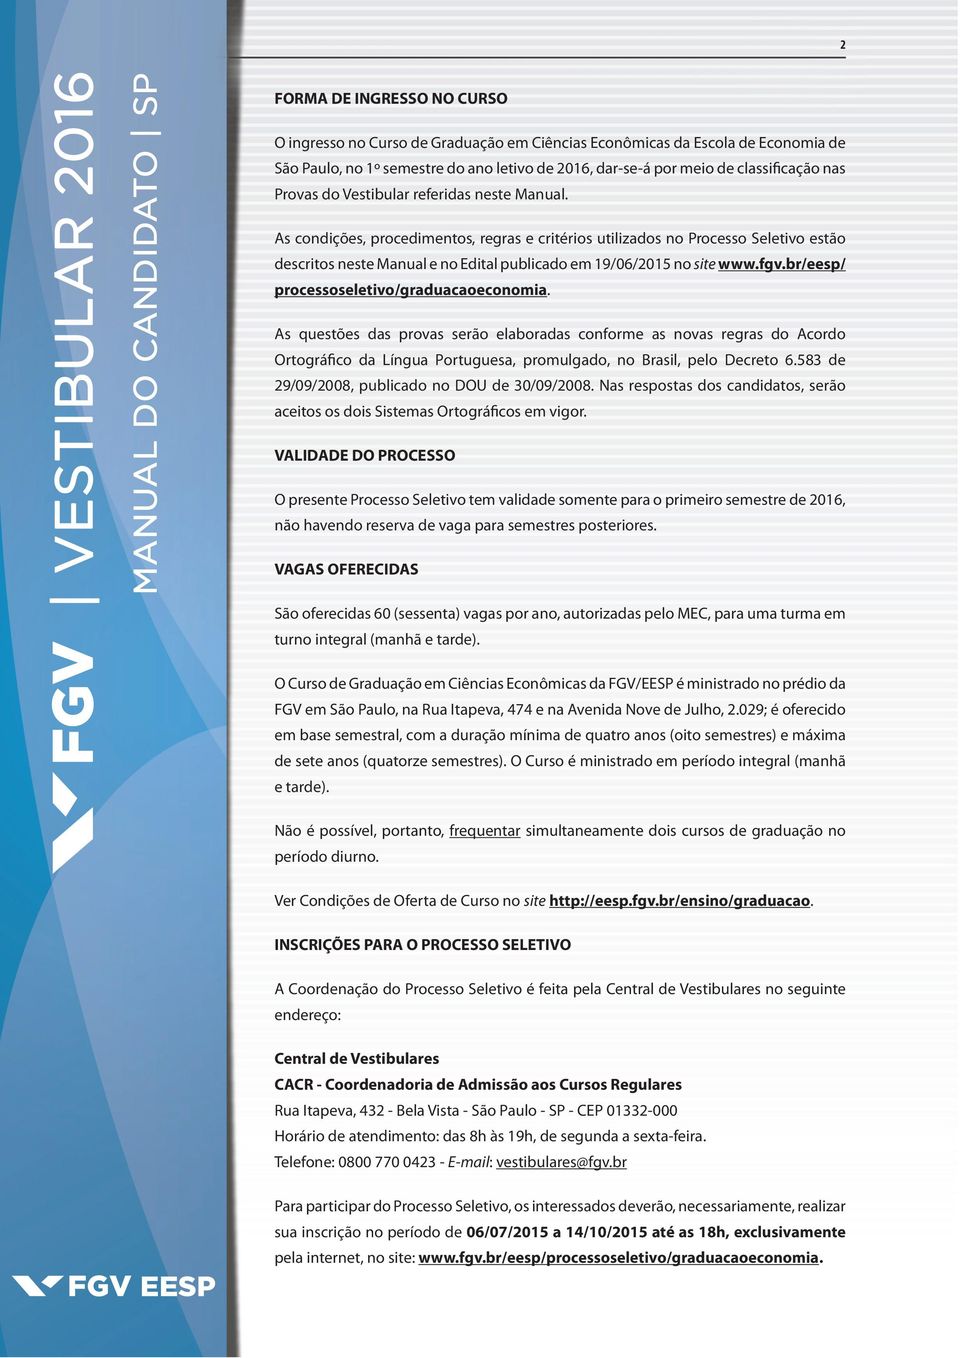 As condições, procedimentos, regras e critérios utilizados no Processo Seletivo estão descritos neste Manual e no Edital publicado em 19/06/2015 no site www.fgv.